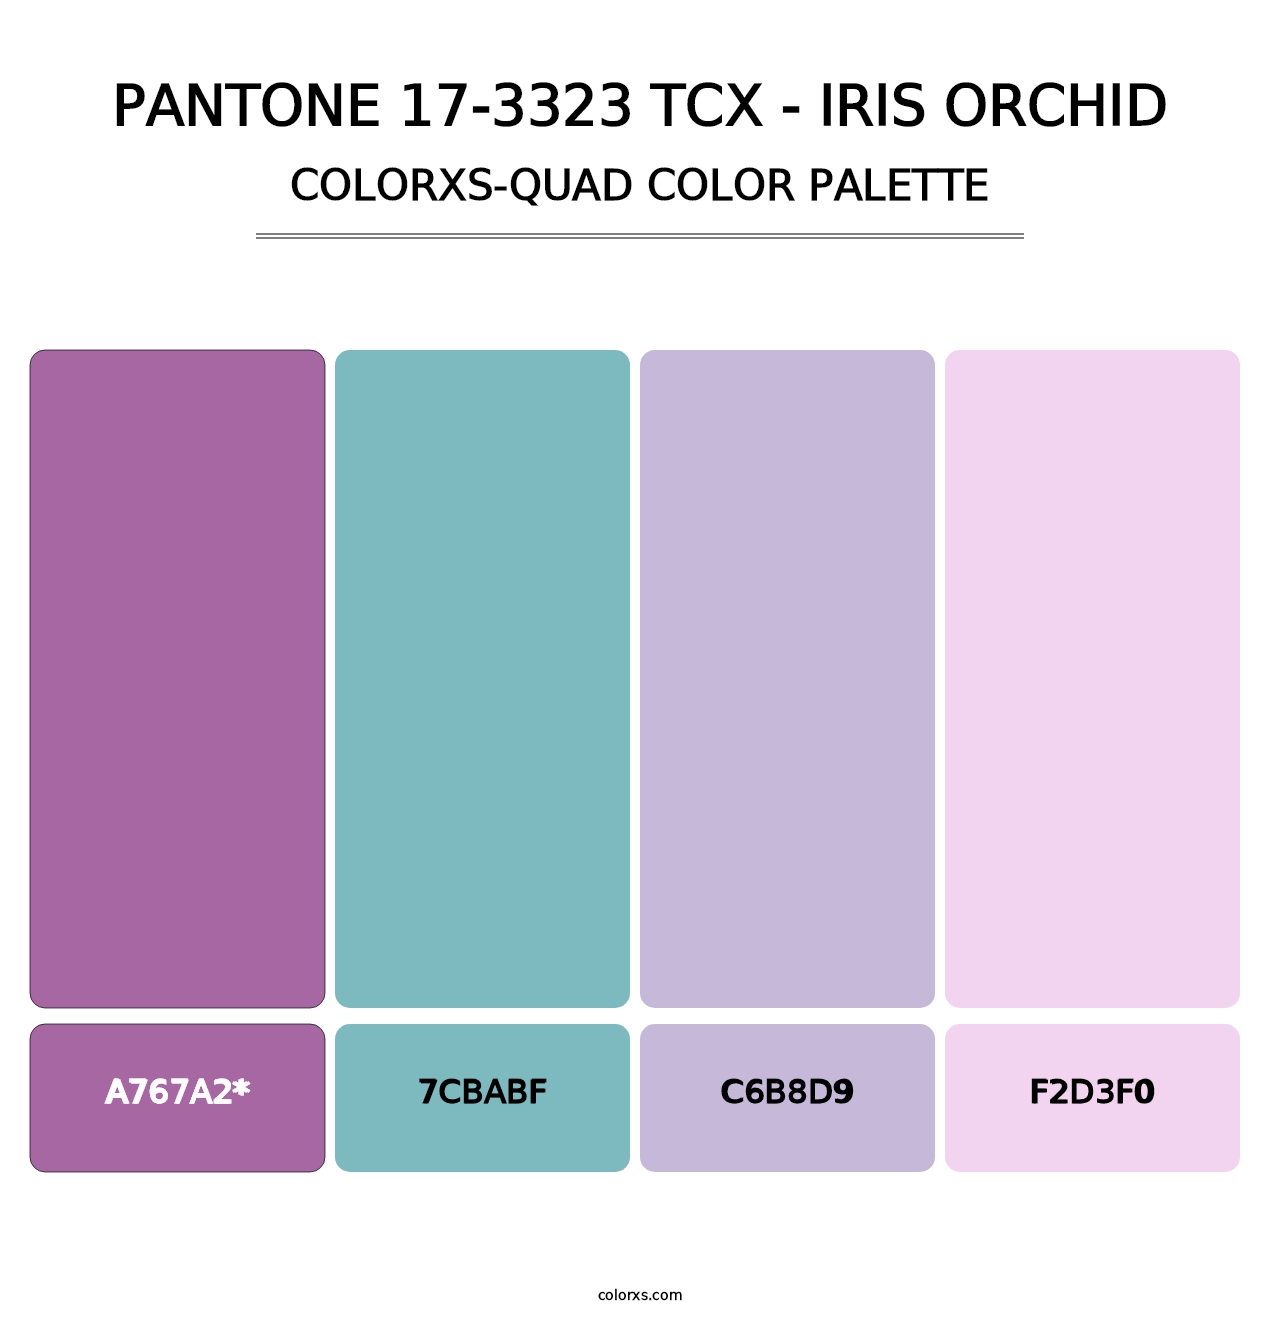 PANTONE 17-3323 TCX - Iris Orchid - Colorxs Quad Palette